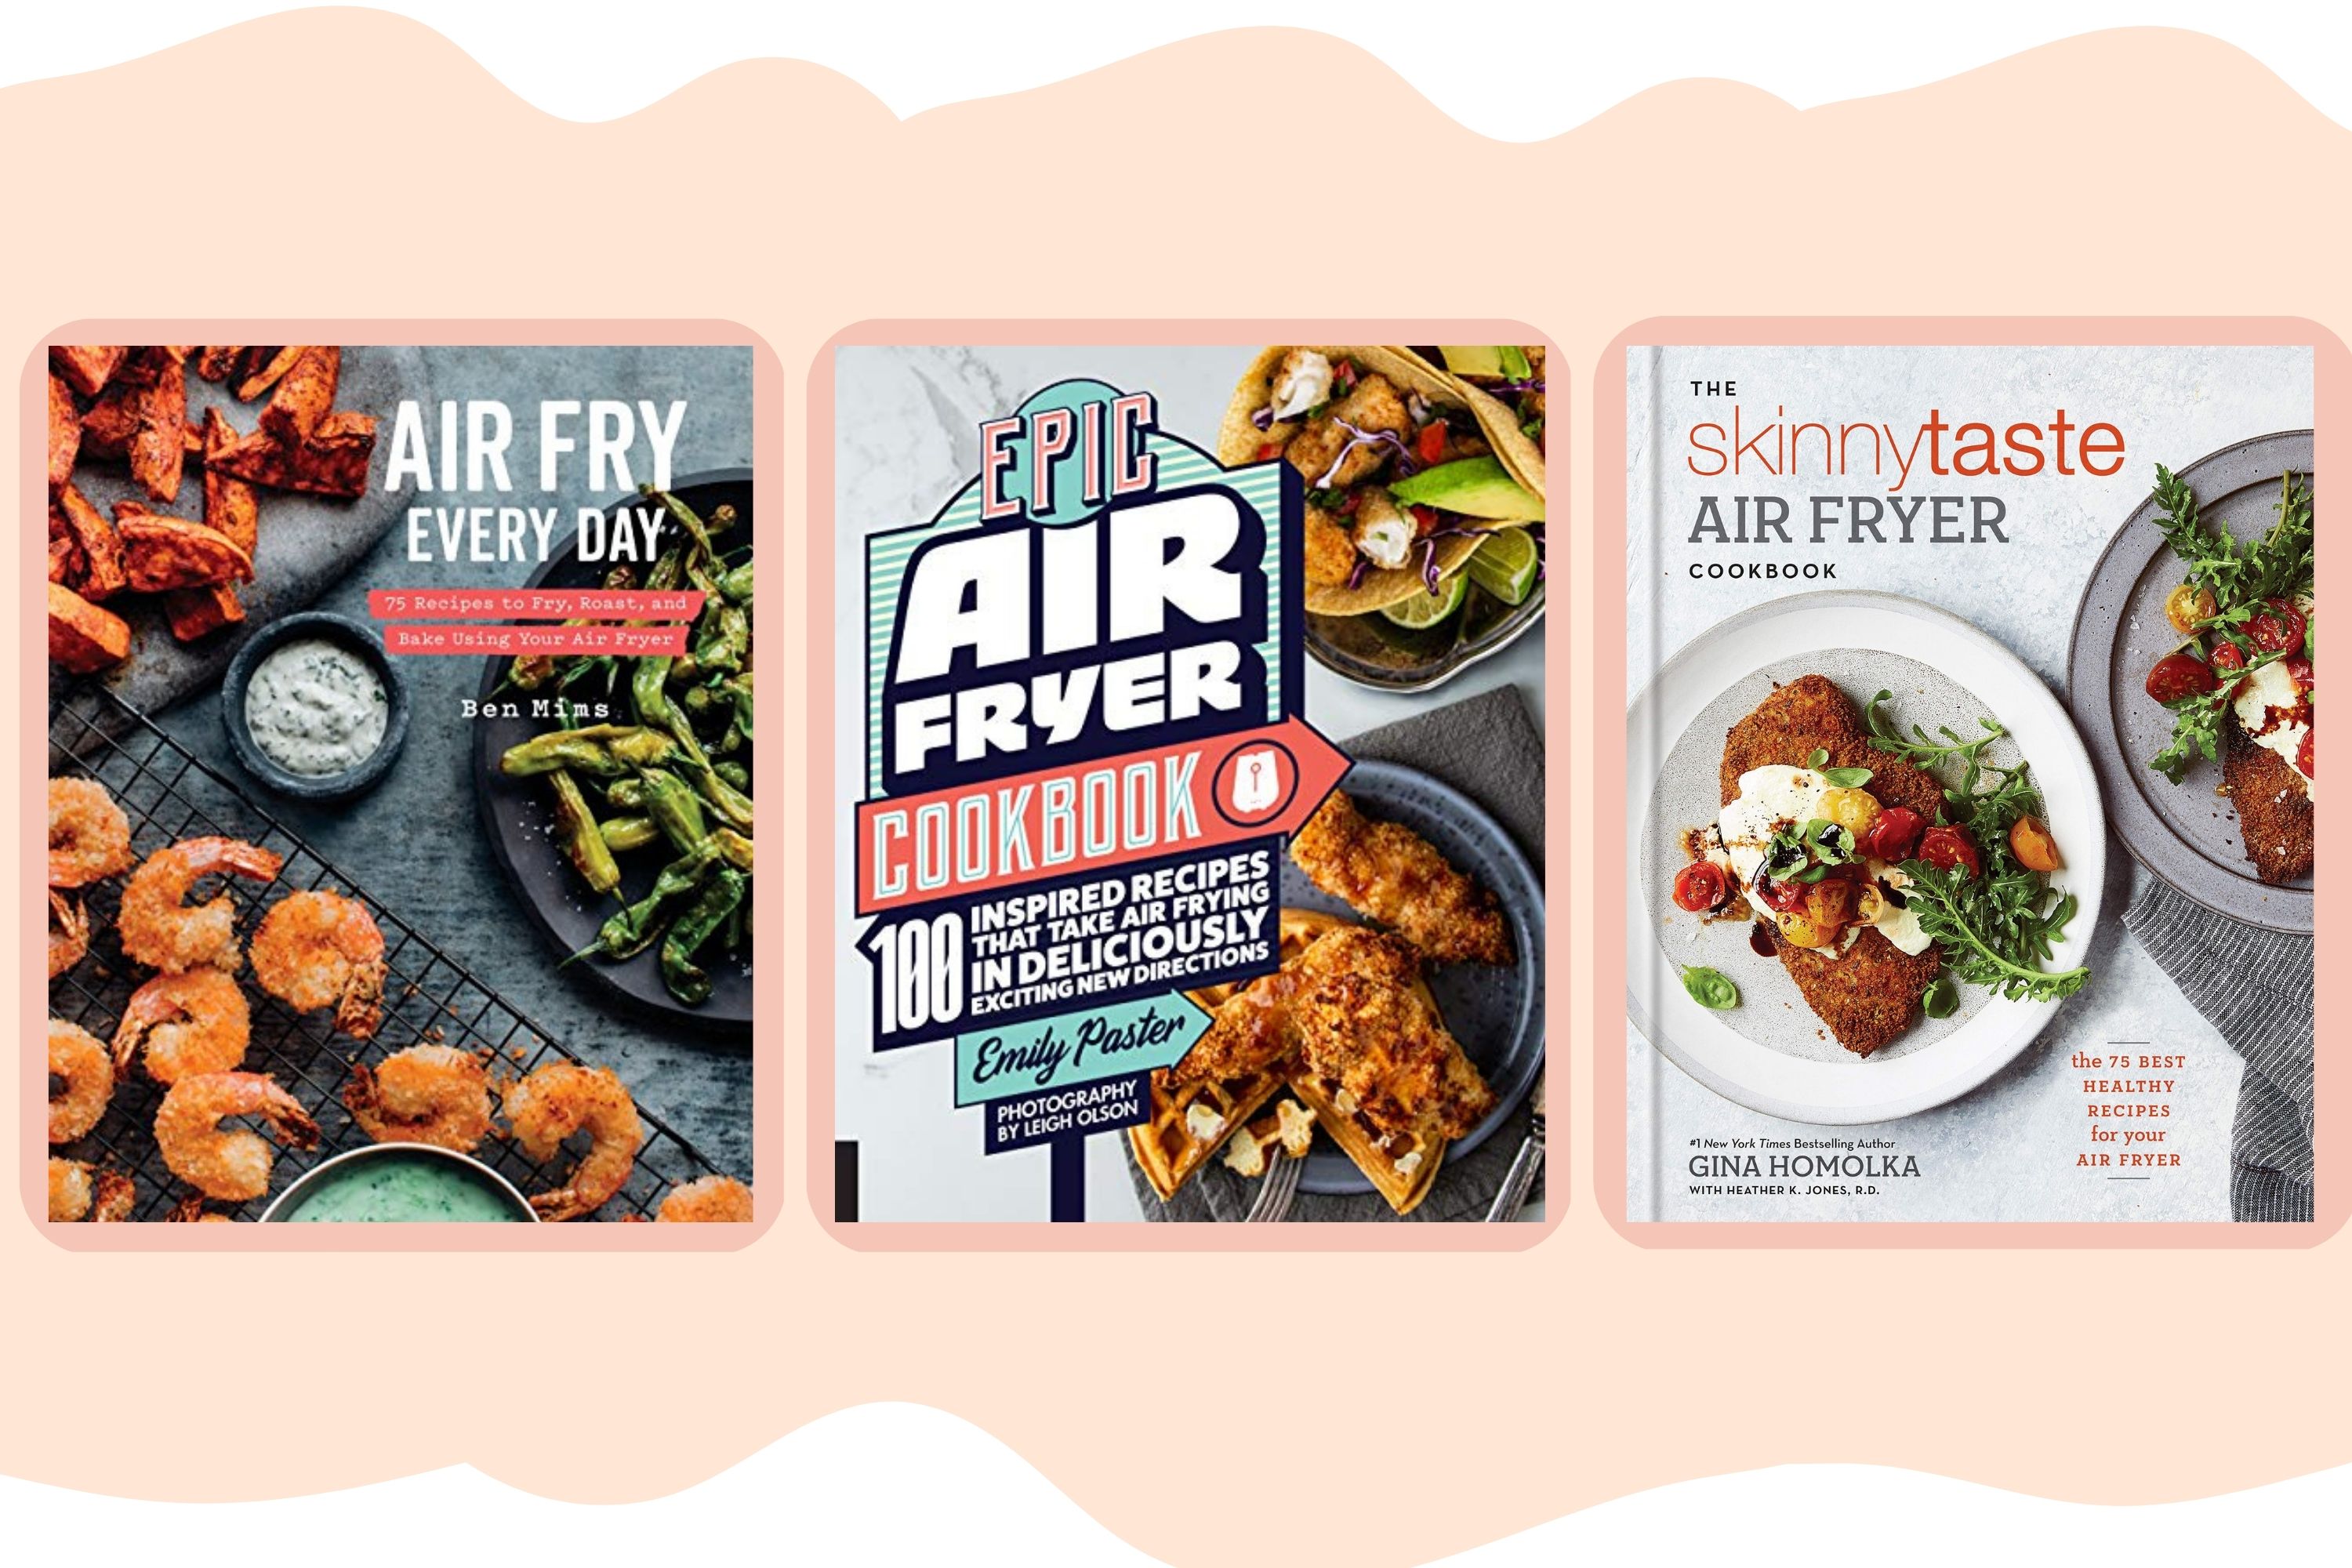 Skinnytaste Air Fryer Cookbook: Cover Reveal - Skinnytaste